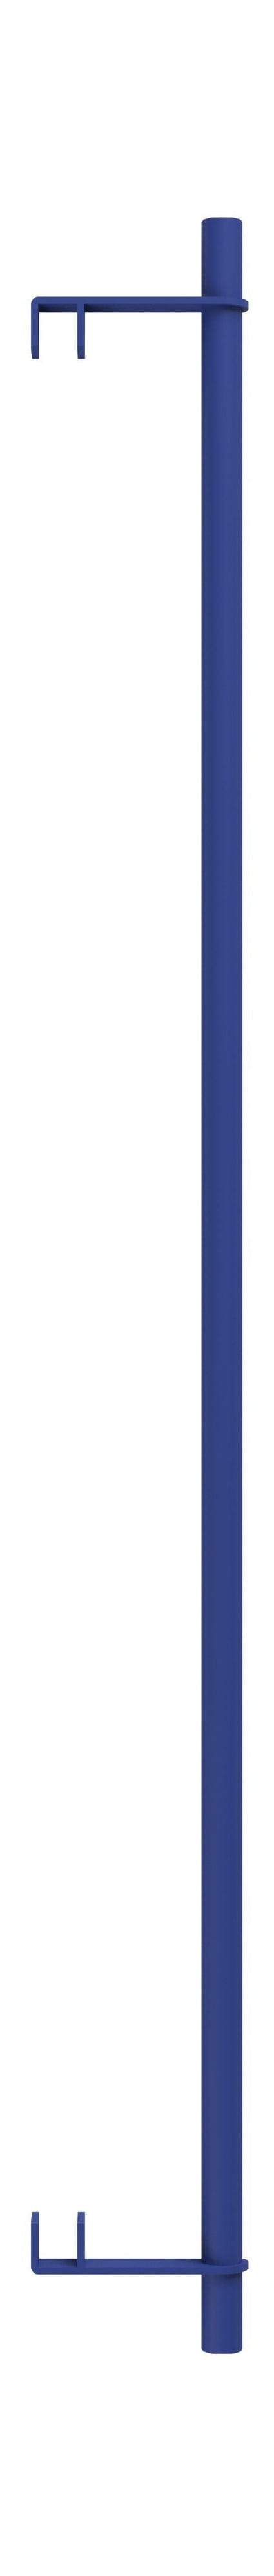 Moebe Système d'étagère / Mur Spotlving Clothes Bar 85 cm, bleu profond